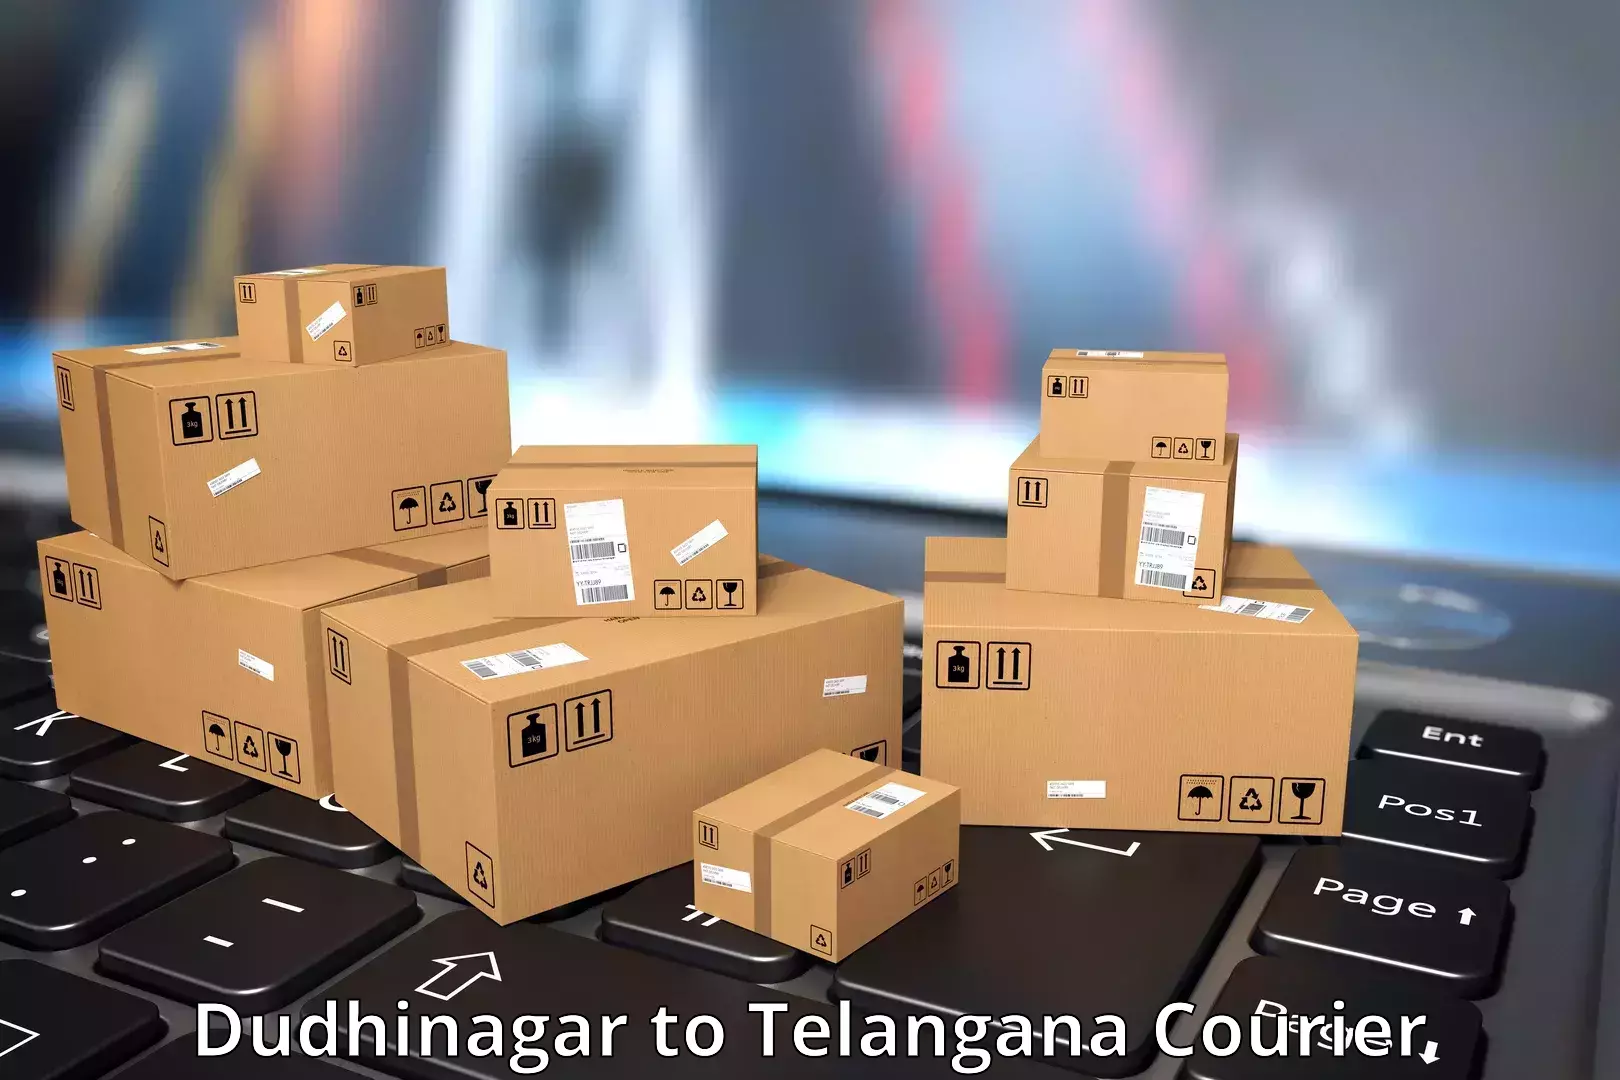 Reliable shipping partners Dudhinagar to Vemulawada